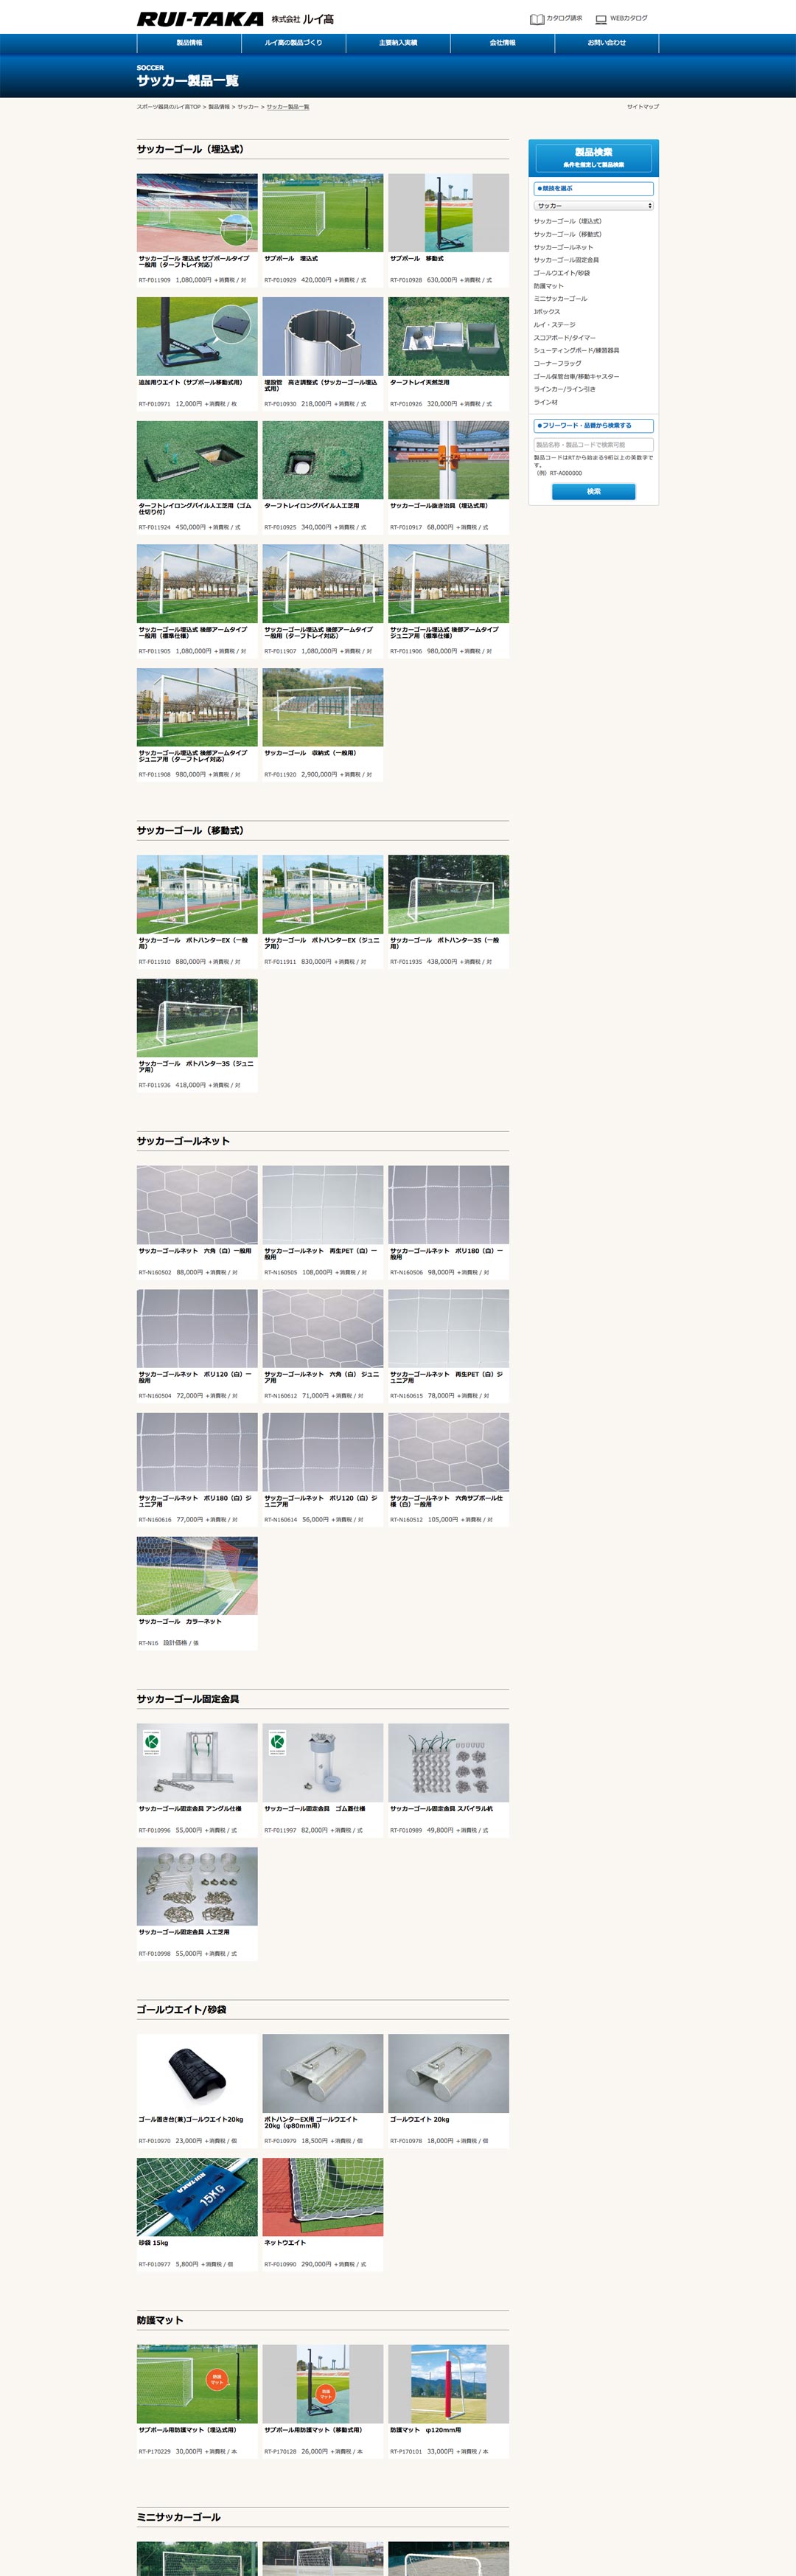 スポーツ施設製造メーカー ホームページ デザイン サンプル サッカー設備製品TOP